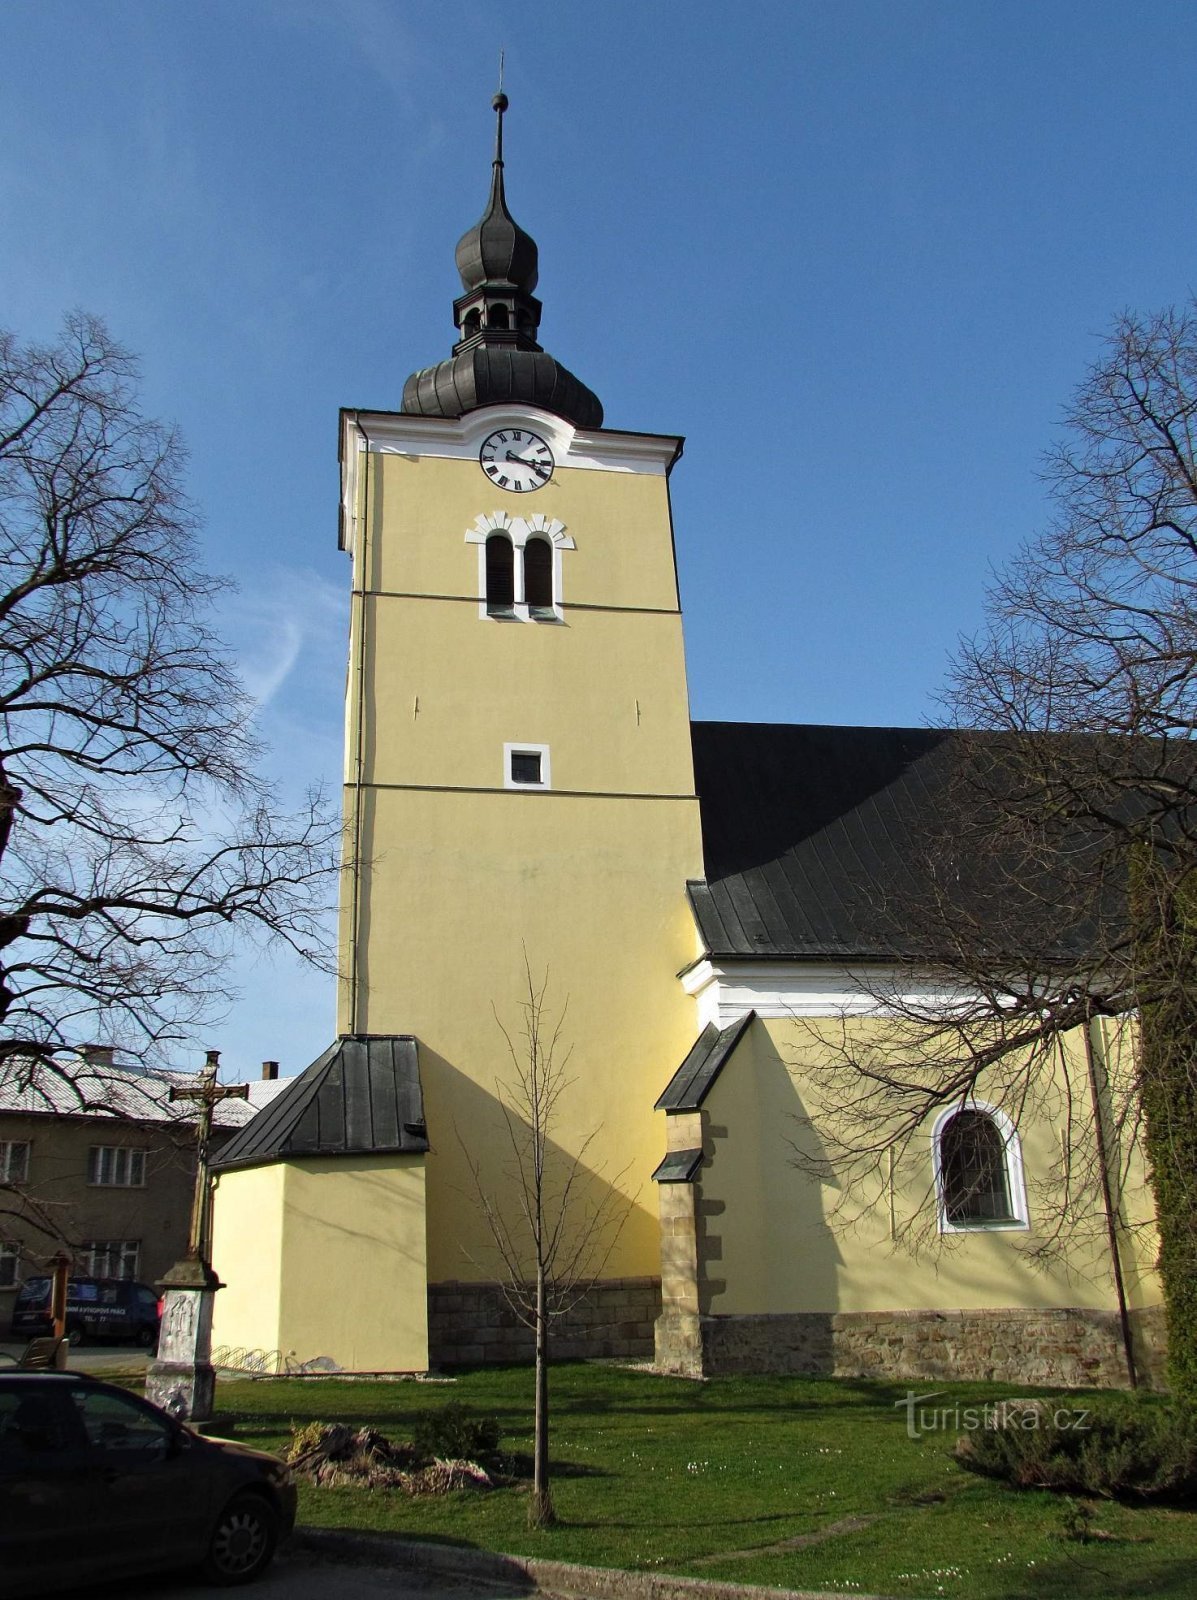 Valašskoklobucký kyrka för upphöjelsen av det heliga korset